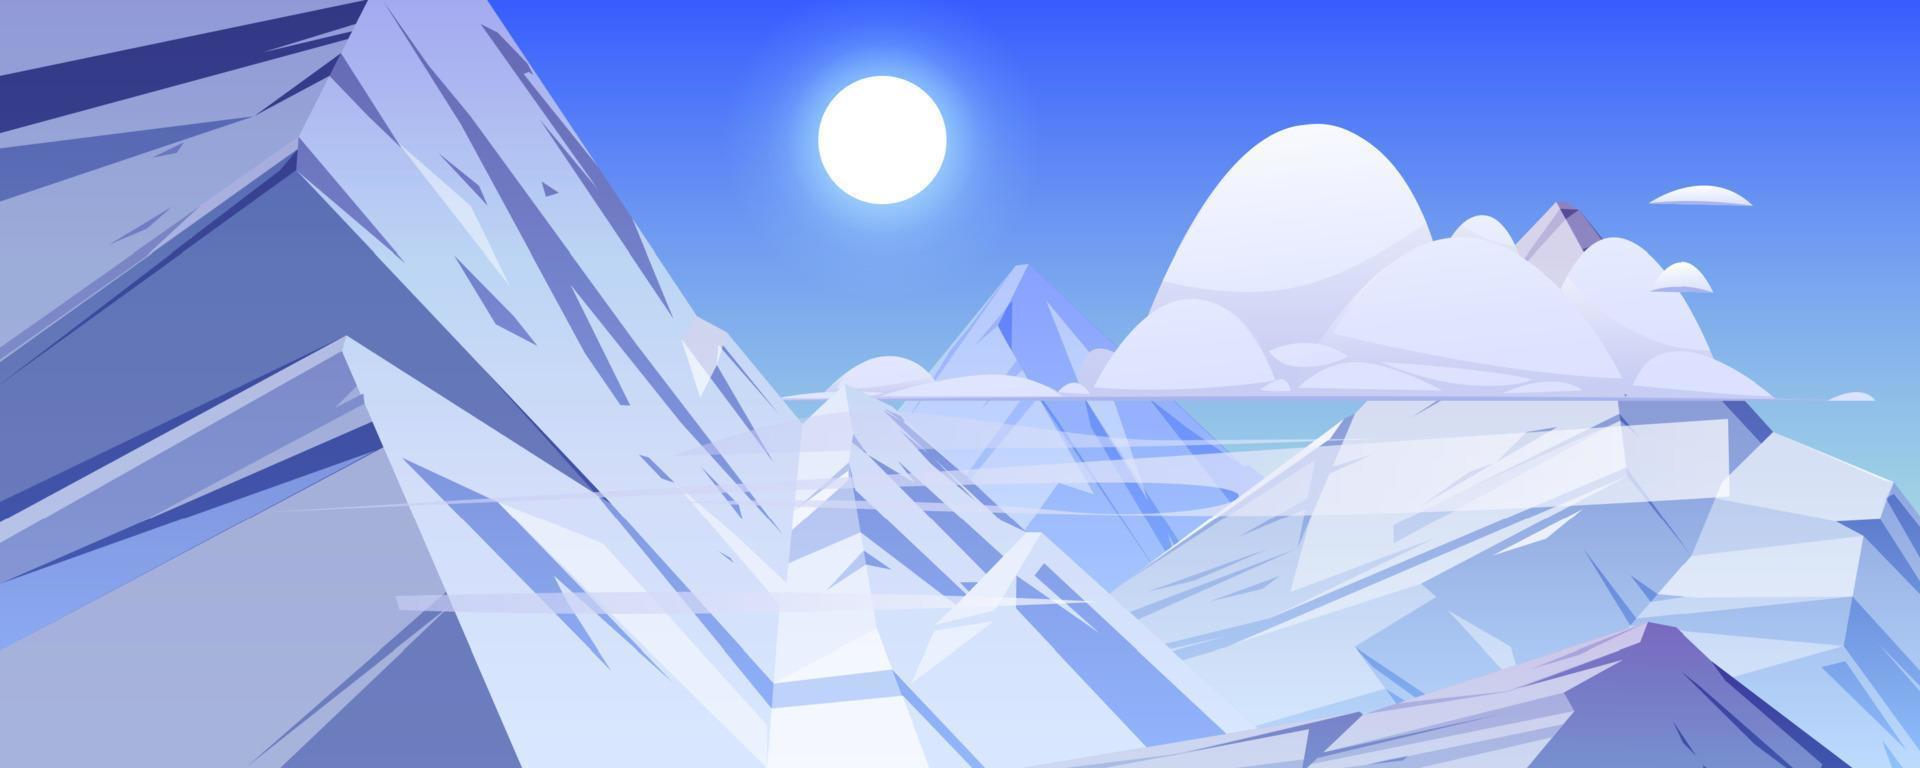 bergen landschap met rotsen en ijs pieken vector